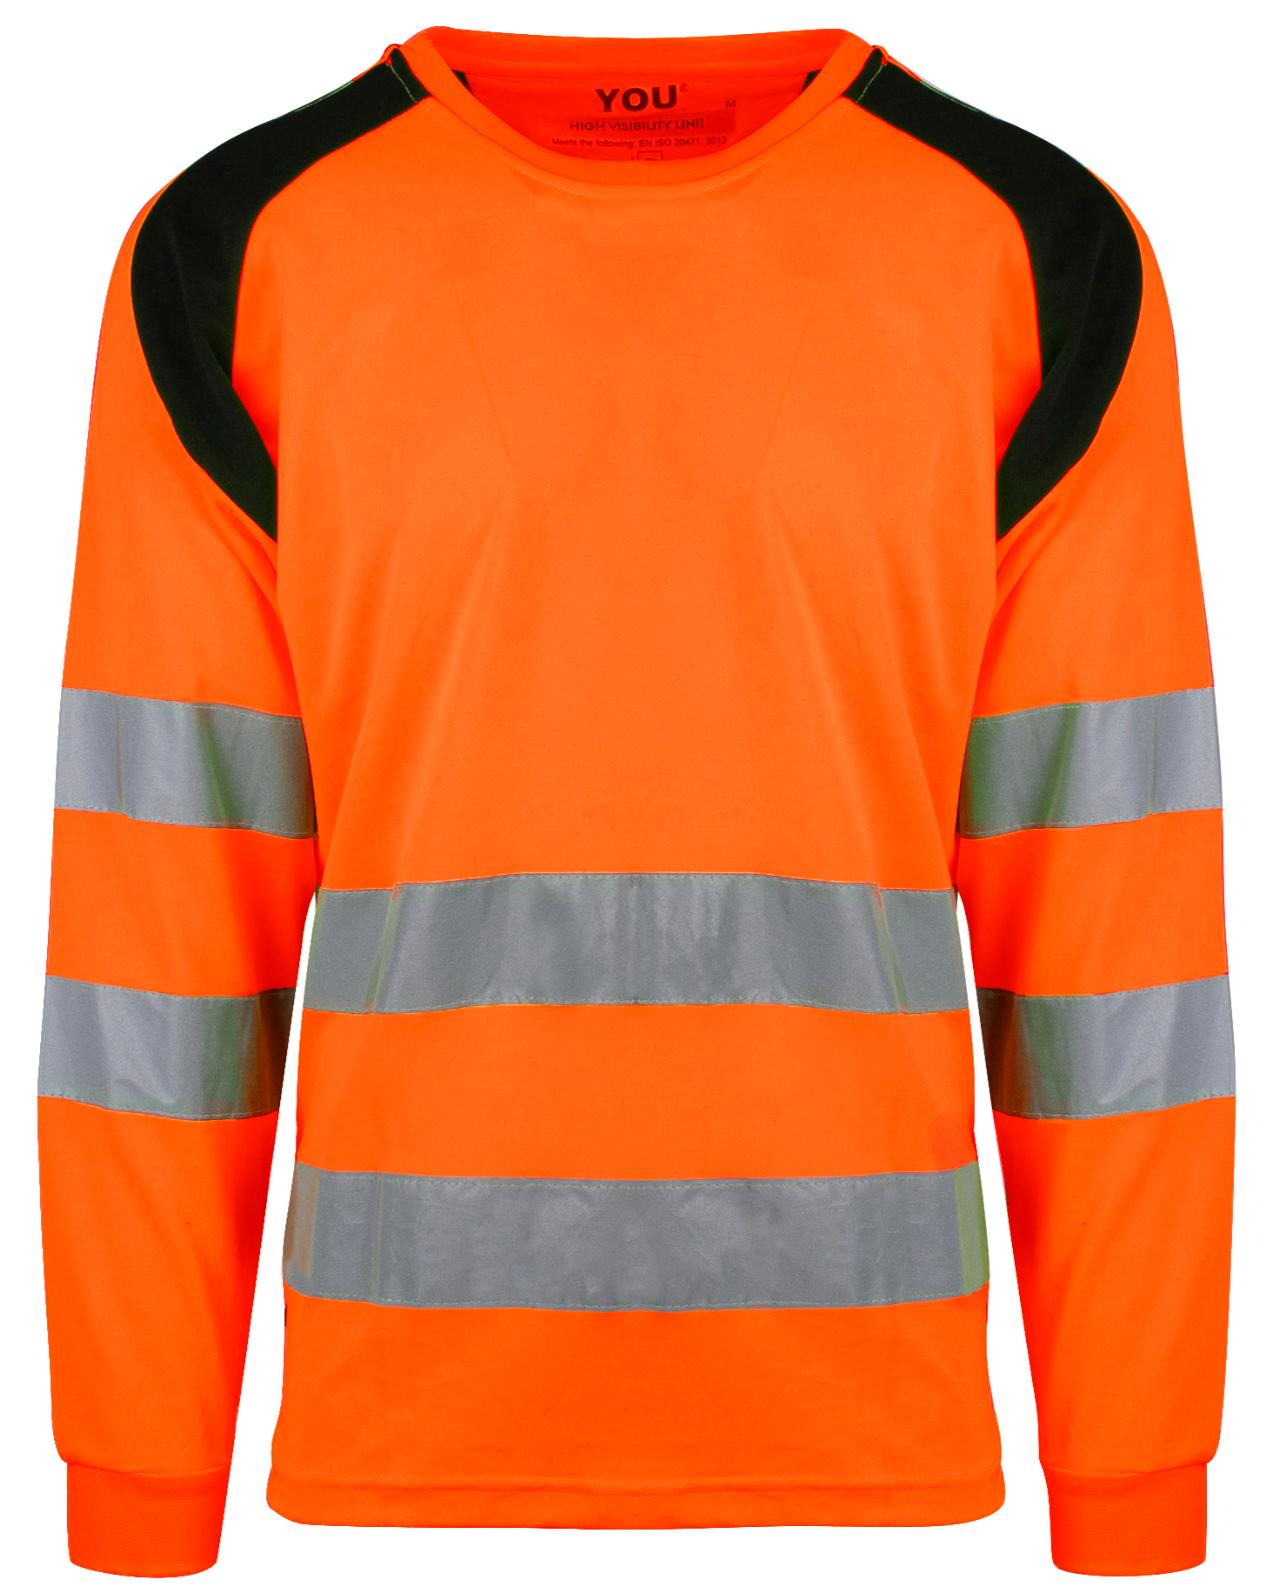 4671 Lund Safety Orange